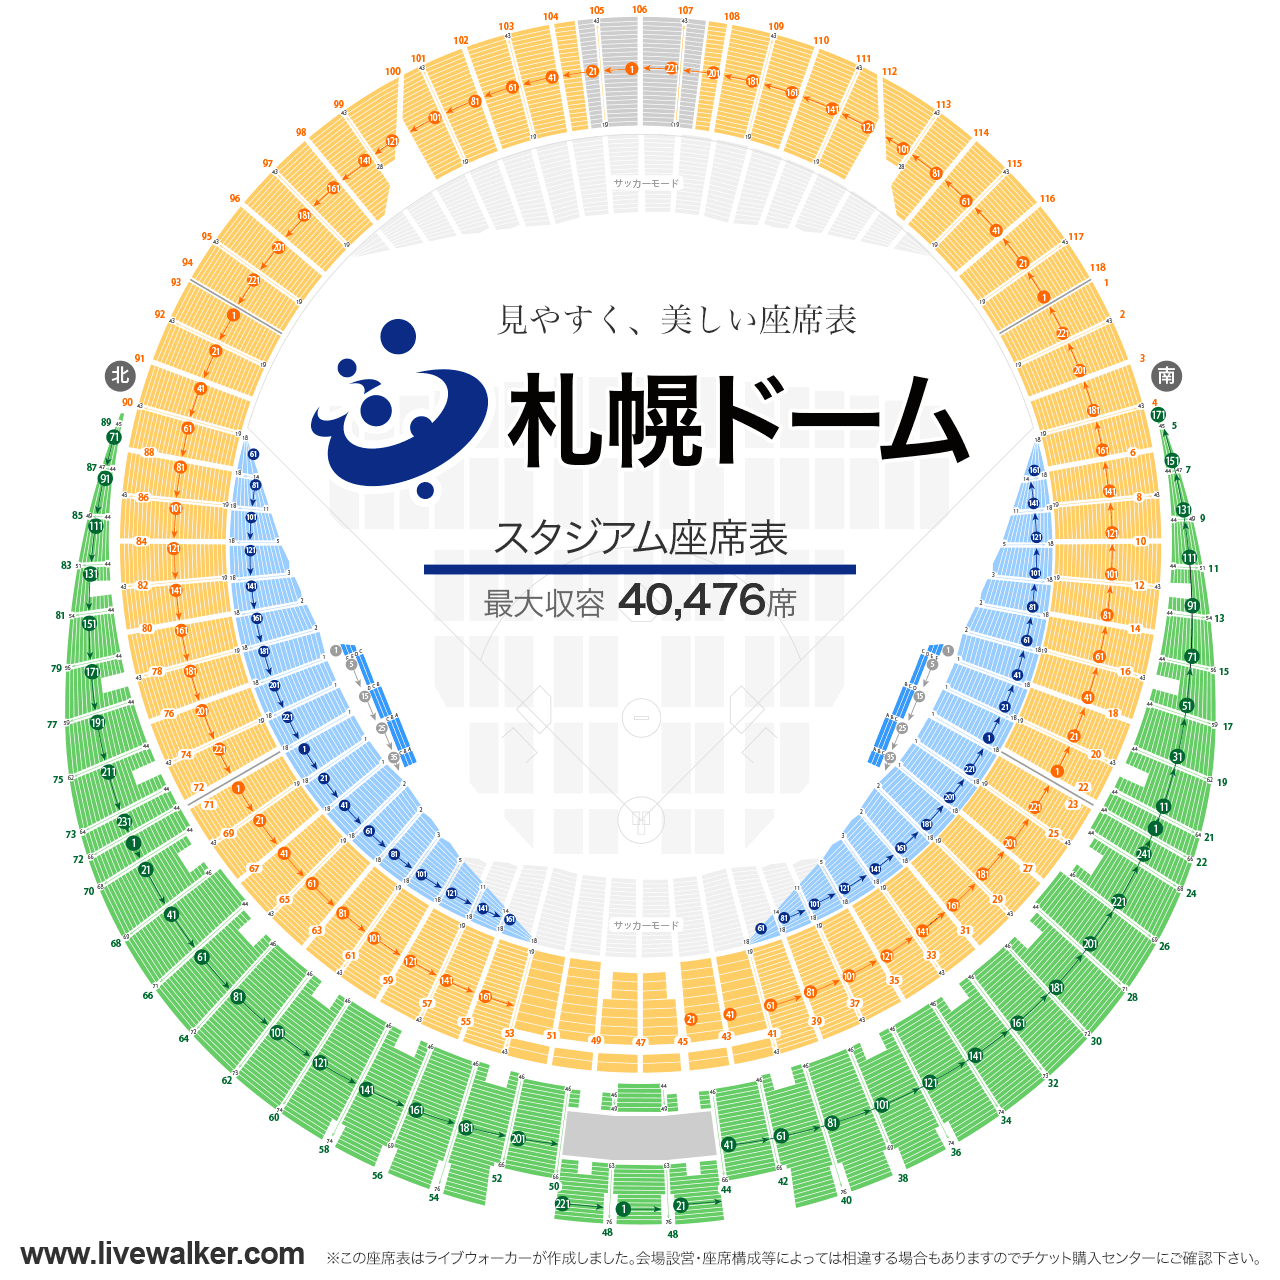 札幌ドームスタジアムの座席表